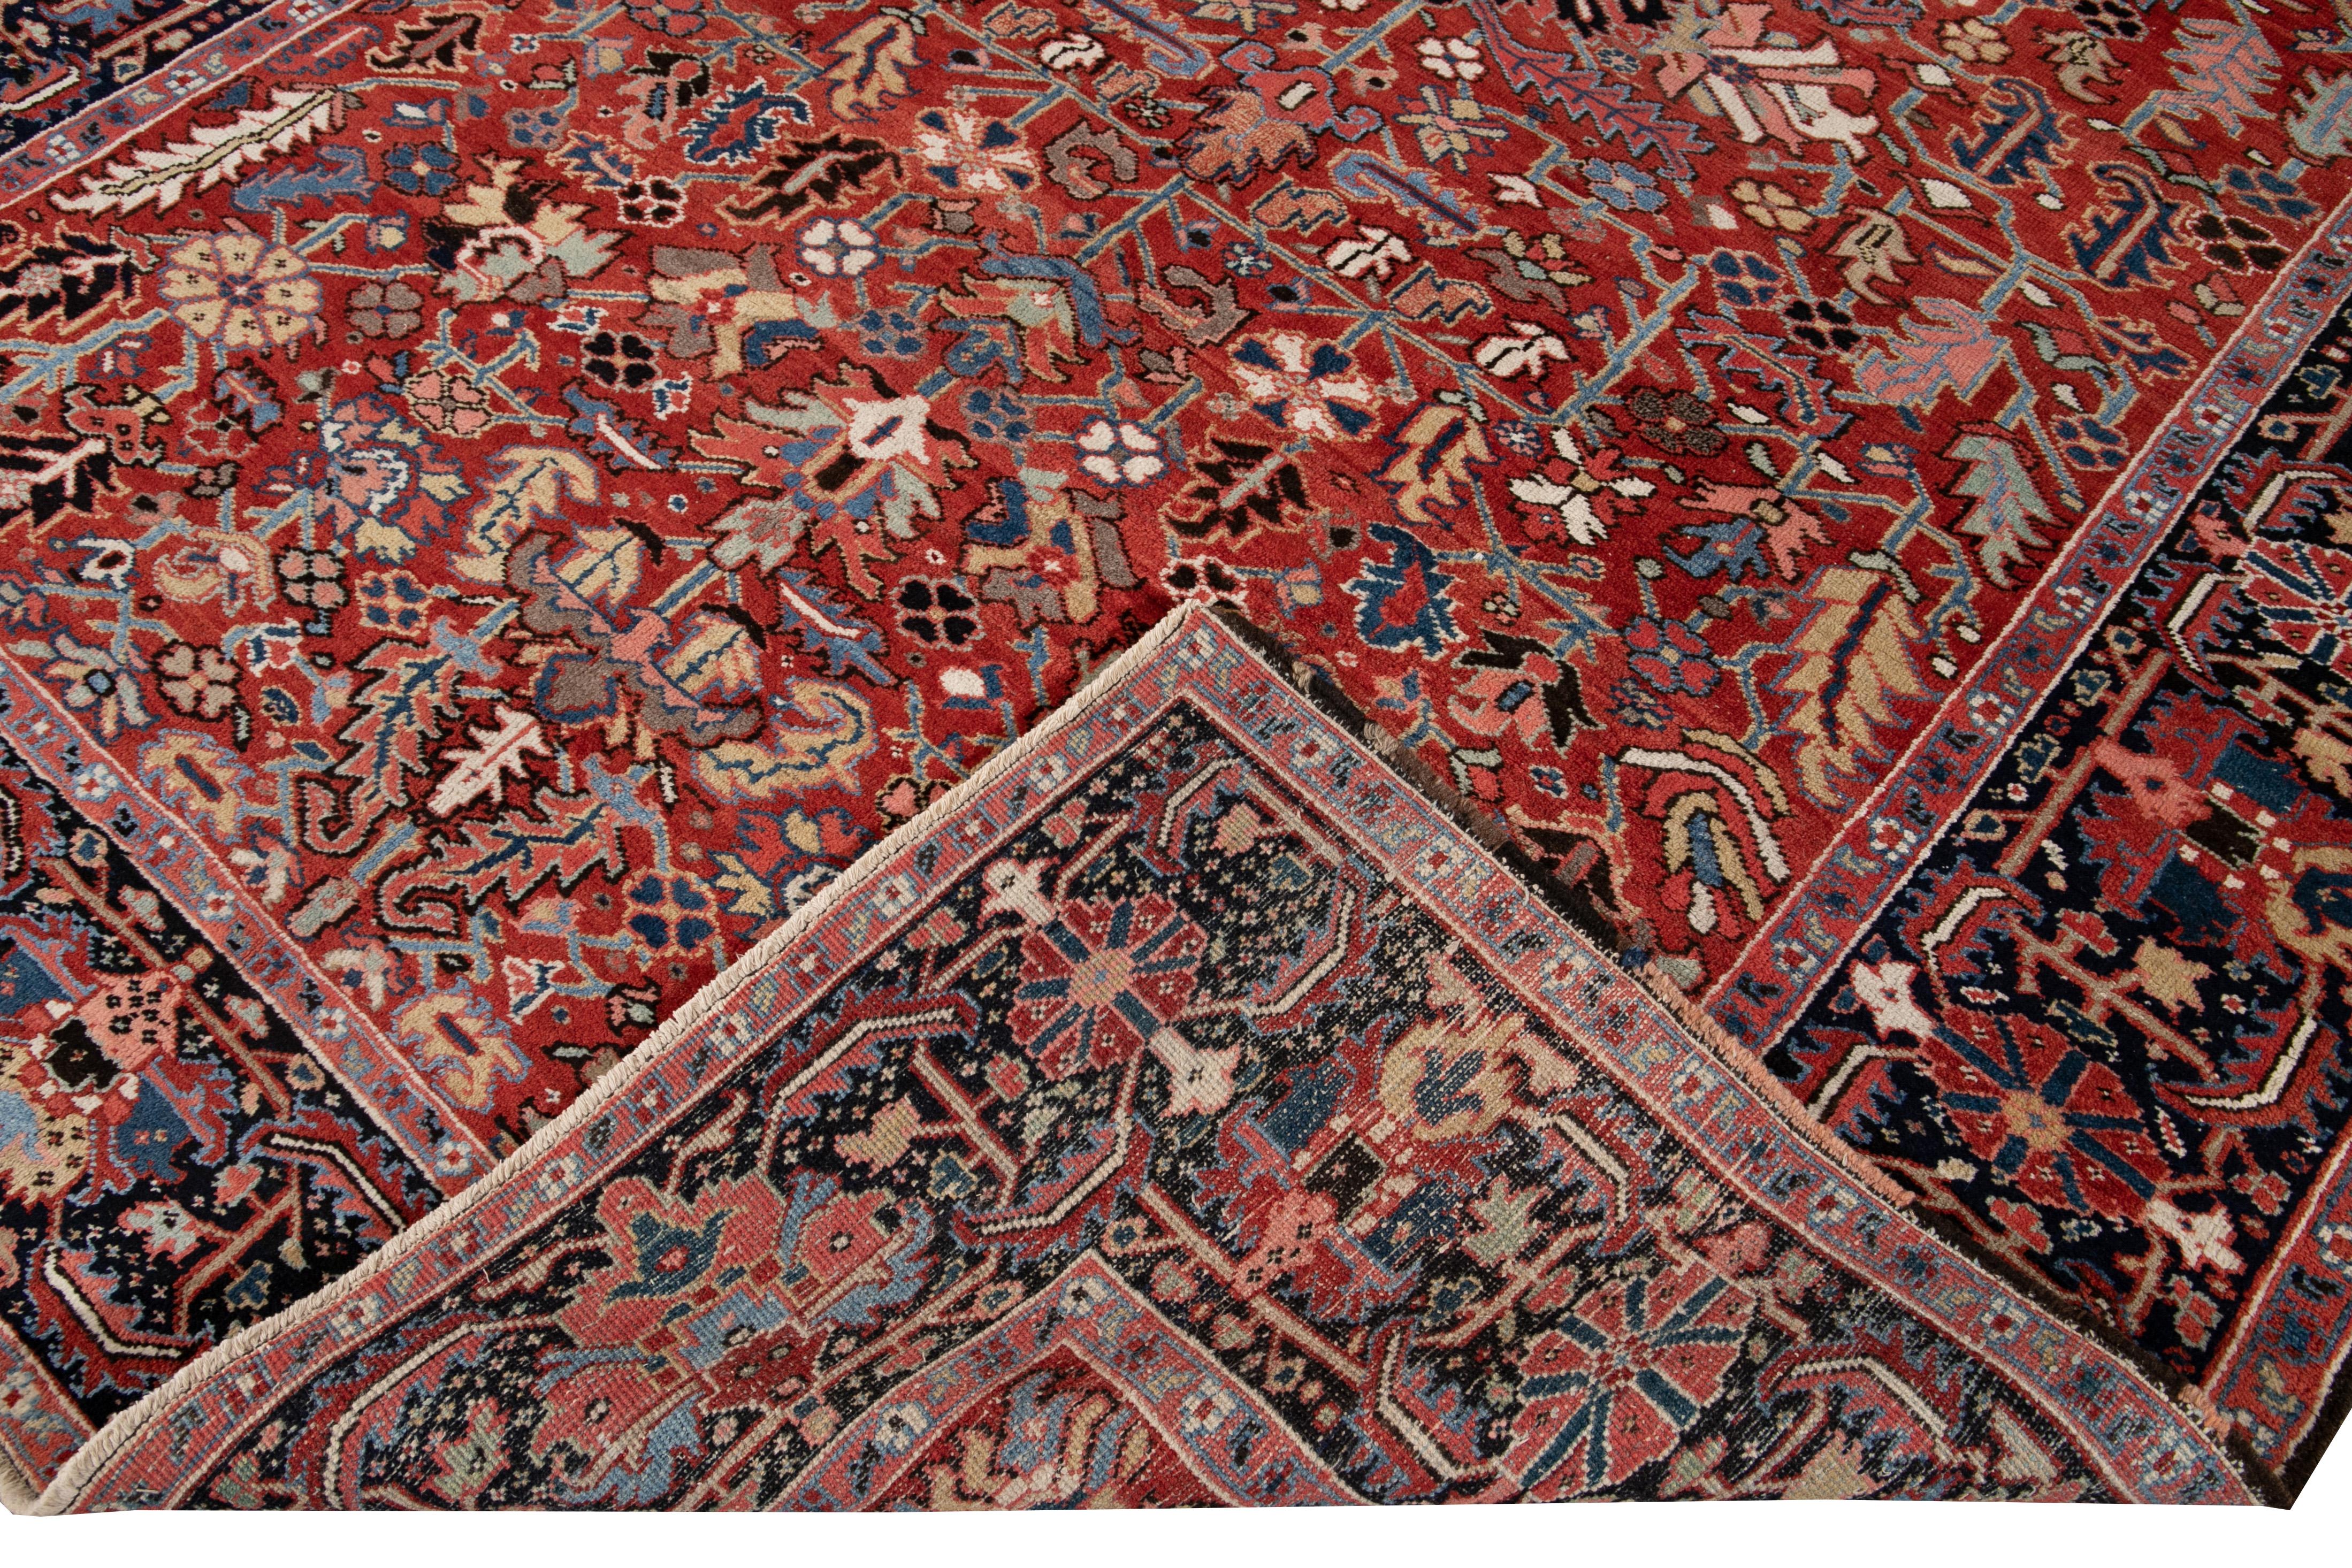 Schöner antiker persischer handgeknüpfter Heriz-Wollteppich mit rotem Feld. Dieser Heriz-Teppich hat mehrfarbige Akzente in einem prächtigen geometrischen Blumenmuster.

Dieser Teppich misst: 8'1